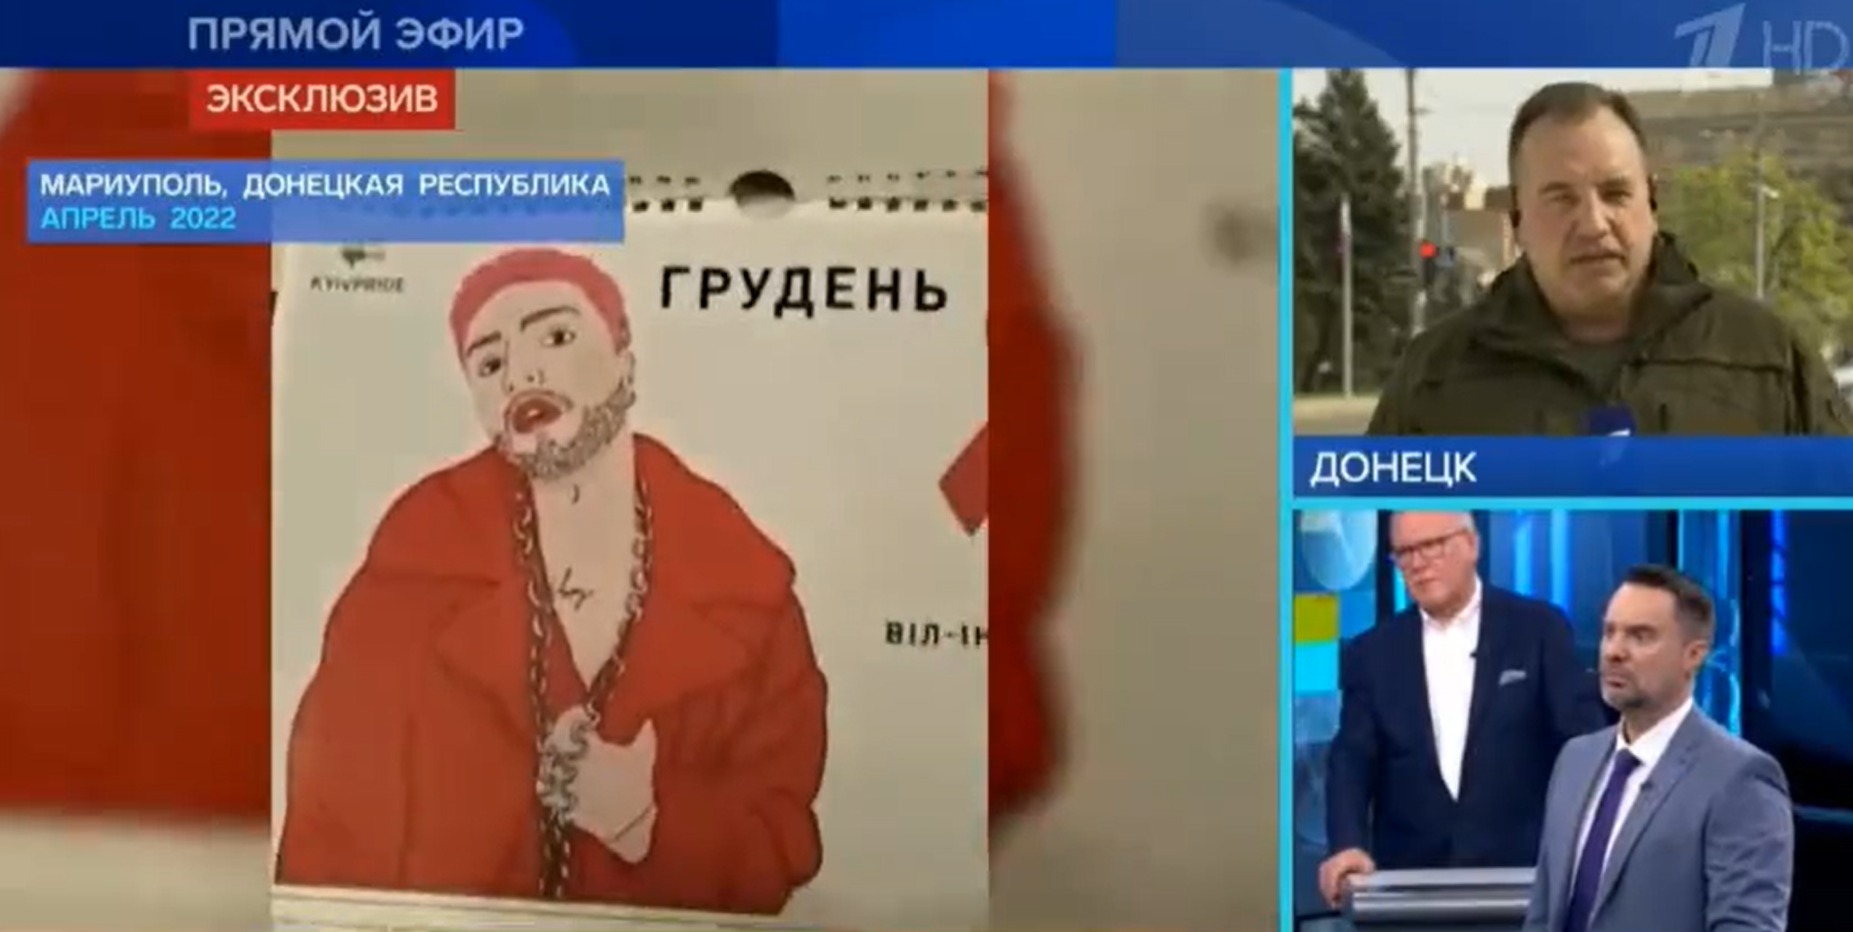 Ezt minden hibbant Putyin-imádónak be kell szopnia! A "felszabadítók" Mariupolban "rábukkantak" Joe Biden bűnbarlangjára (VIDEÓ)